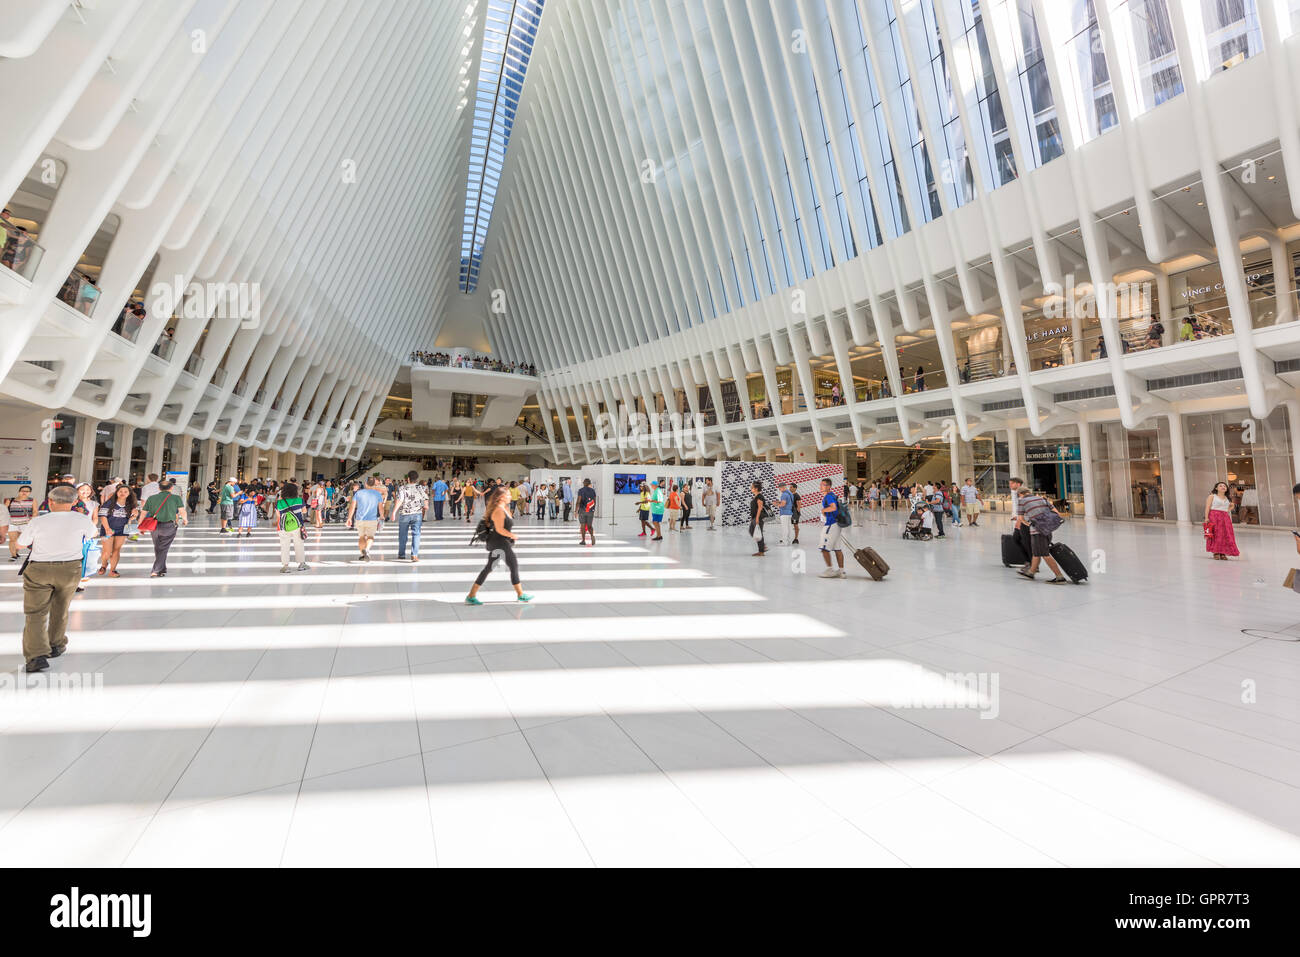 La città di NEW YORK, Stati Uniti d'America - 28 agosto 2016: Westfield World Trade Center Mall in Lower Manhattan. Foto Stock